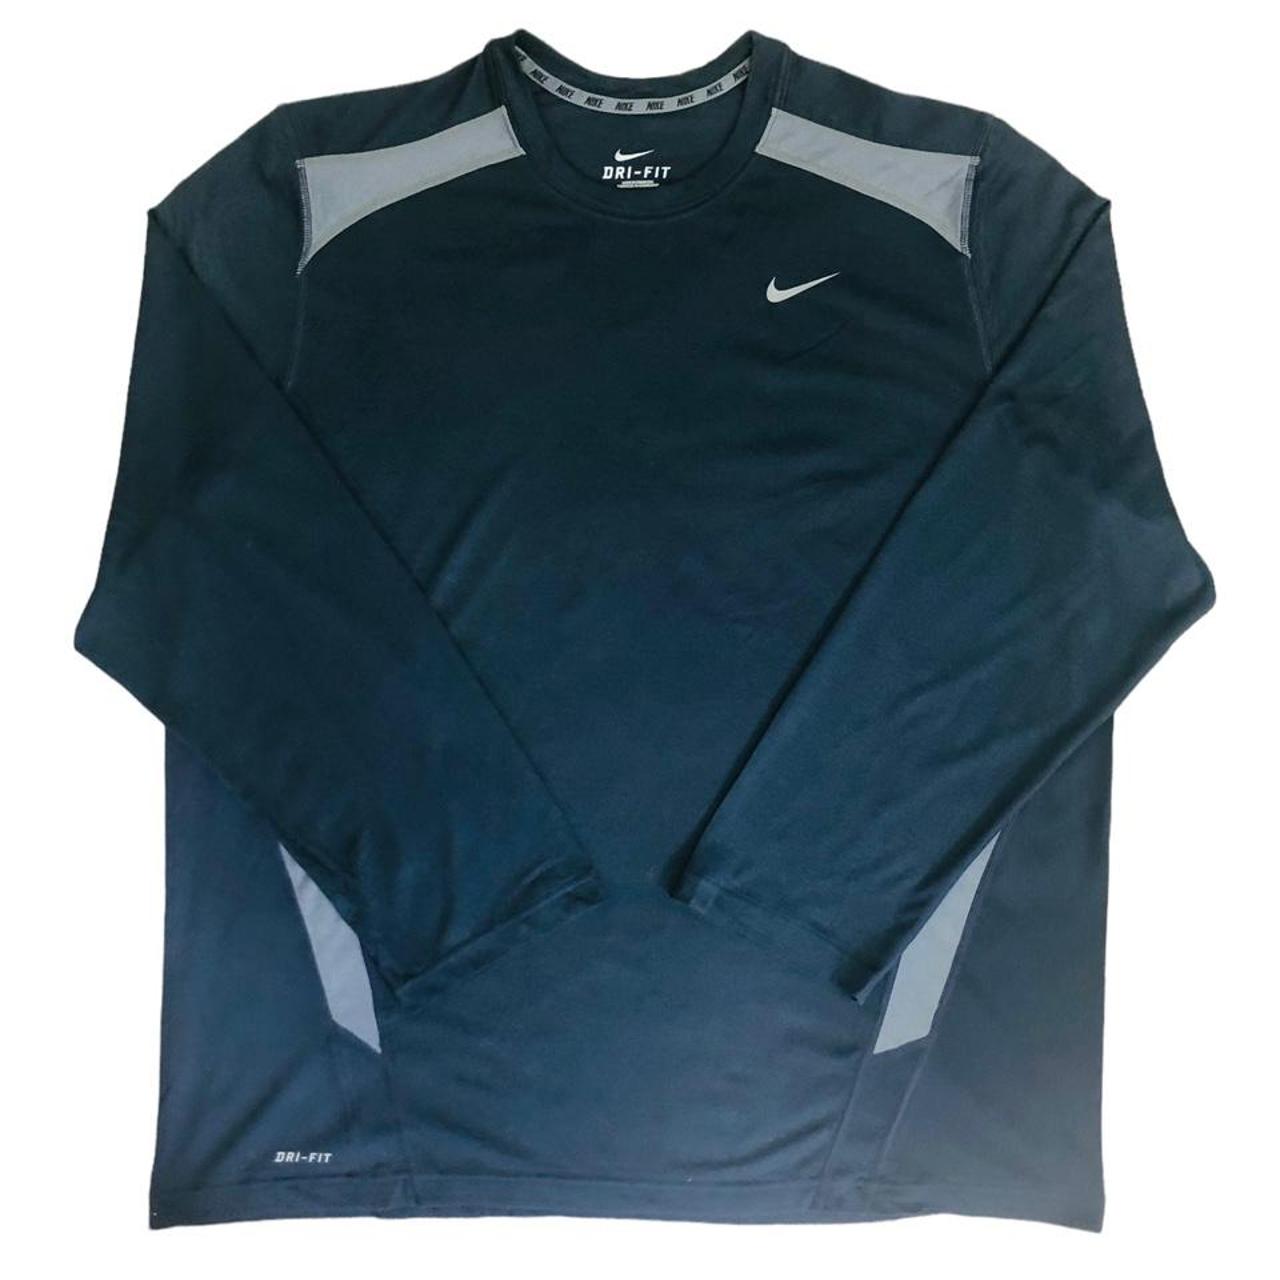 Incredible Nike long sleeve dri-fit tshirt top in... - Depop